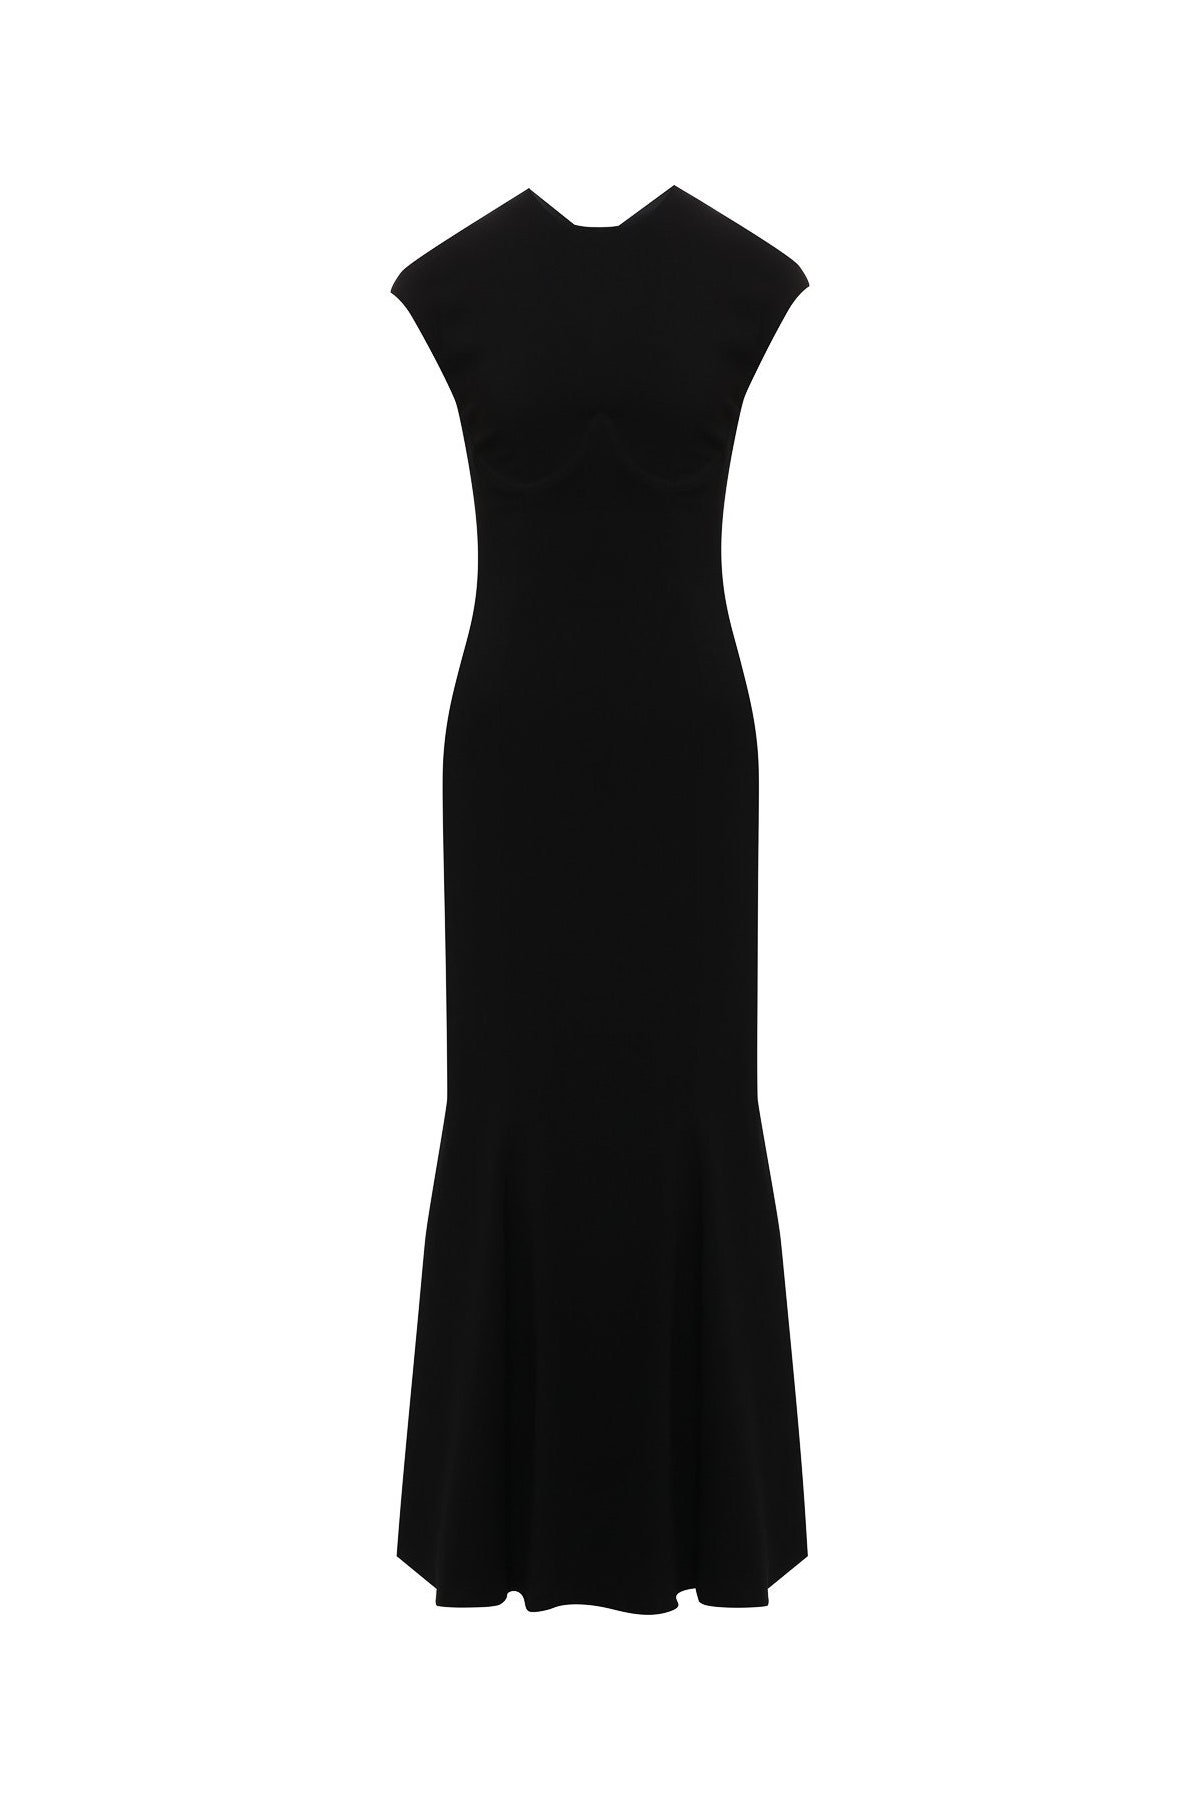 Платье Versace 111 000 рублей tsum.ru